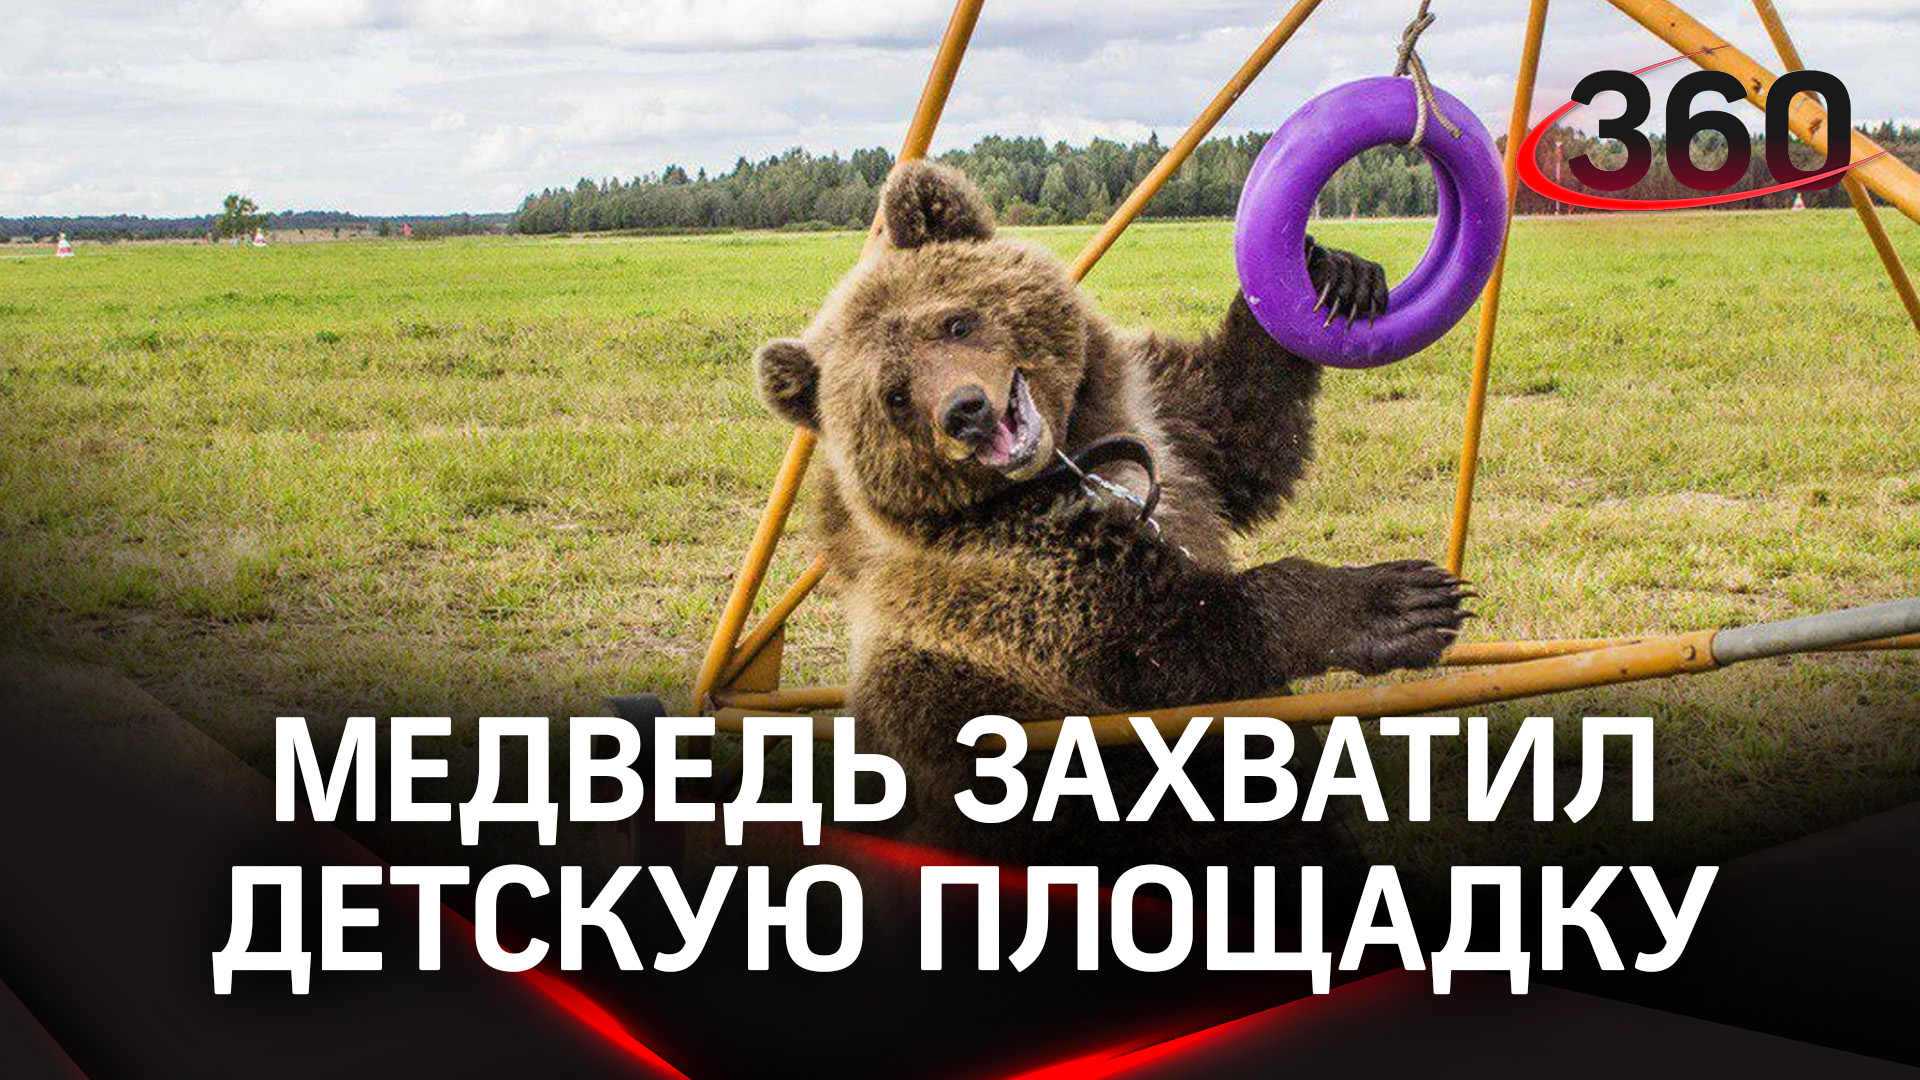 Медведь влюбился в качели - теперь это его детская площадка